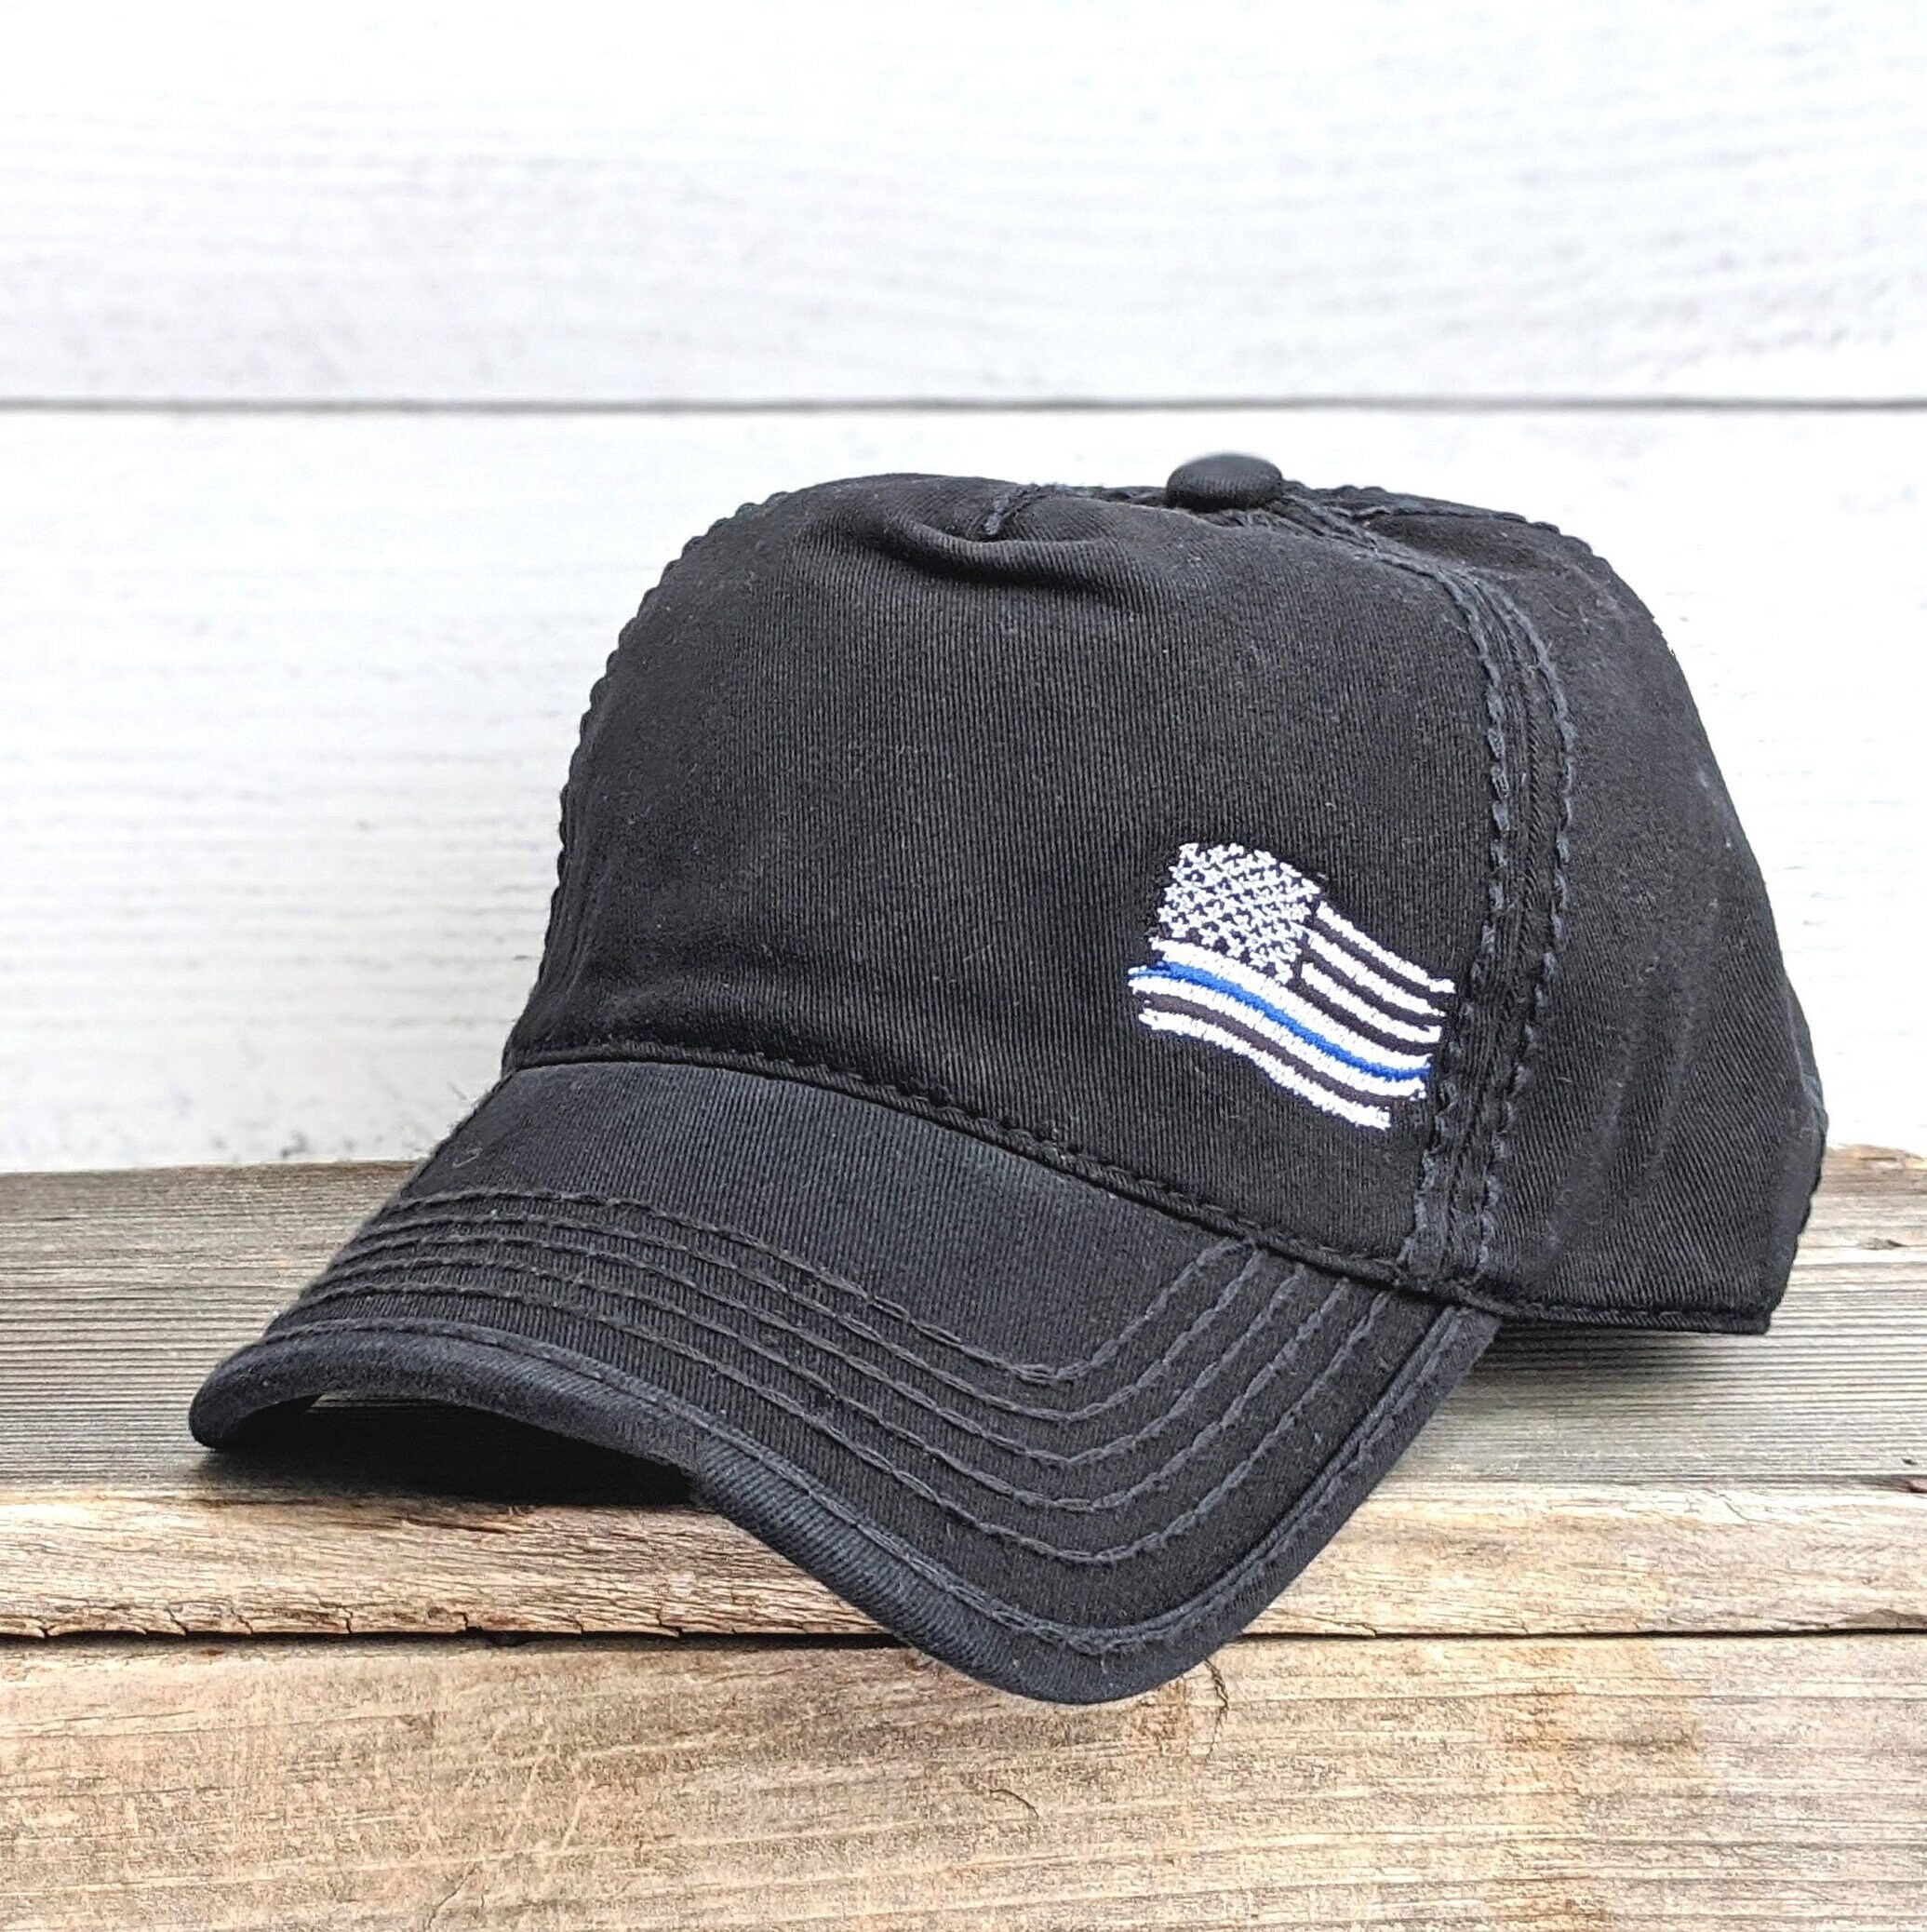 Tiny Police Hat Kit